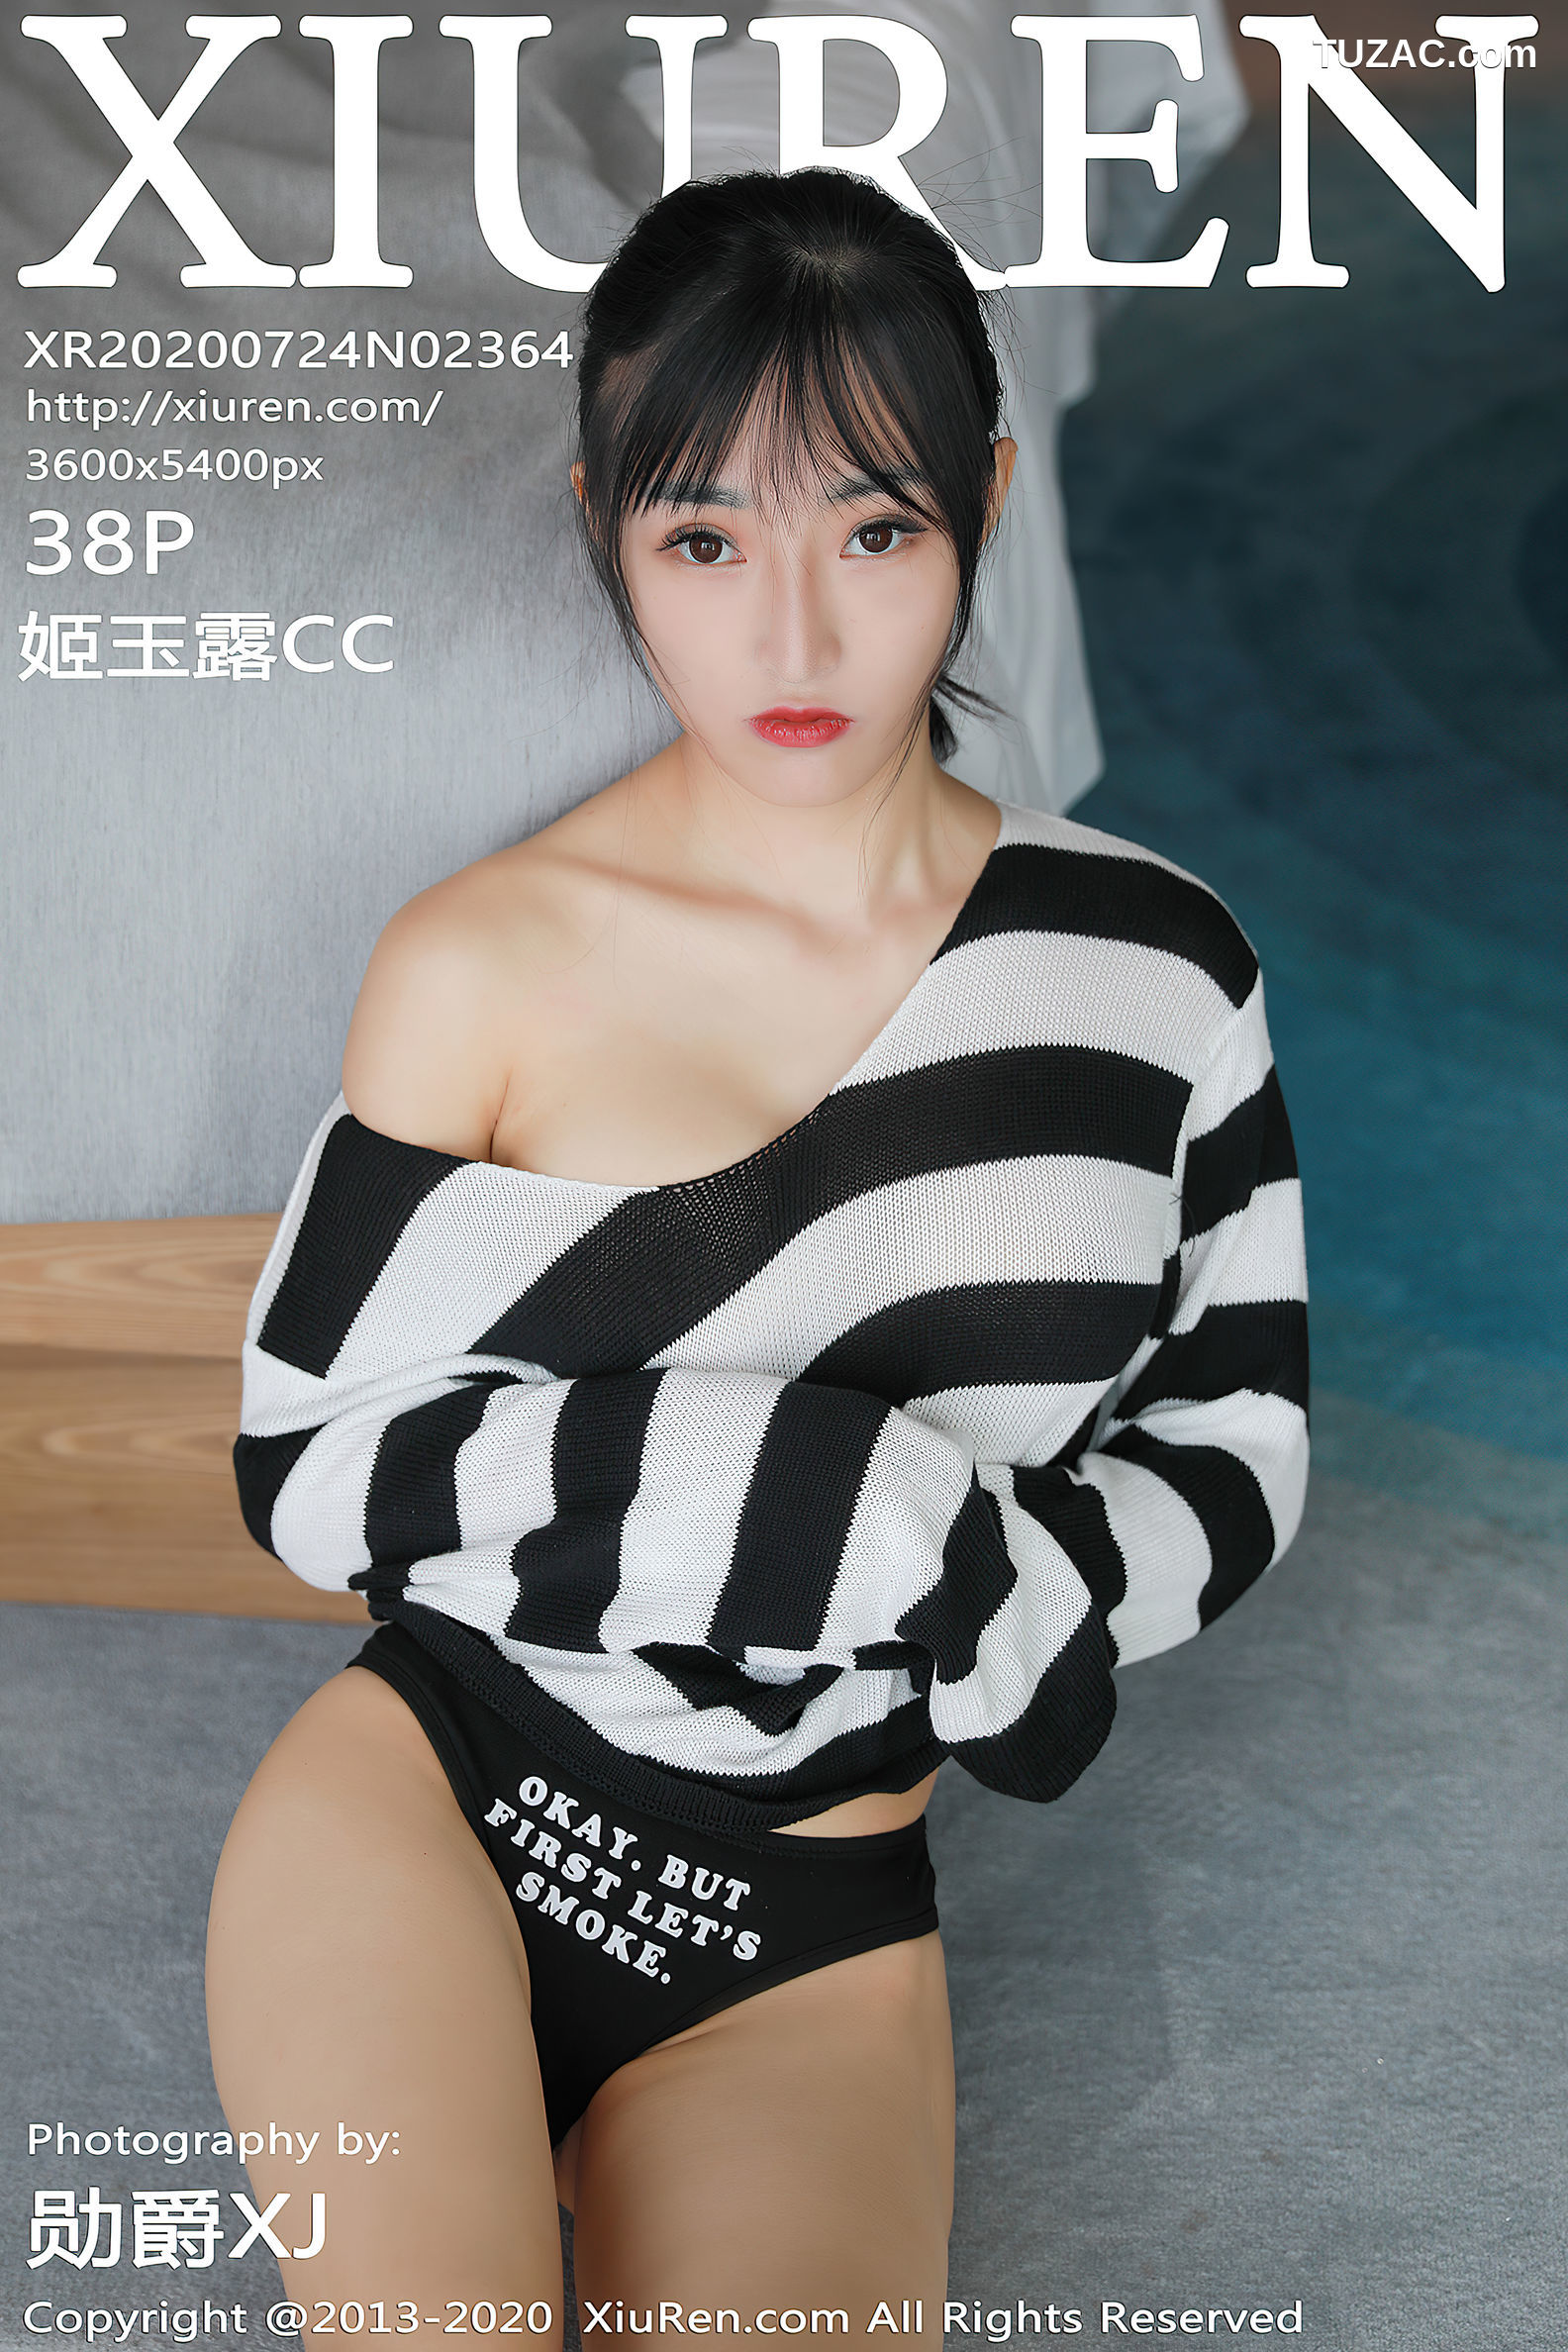 XiuRen秀人网-2364-姬玉露Cc-《热裤加小T恤充满了诱惑力》-2020.07.24